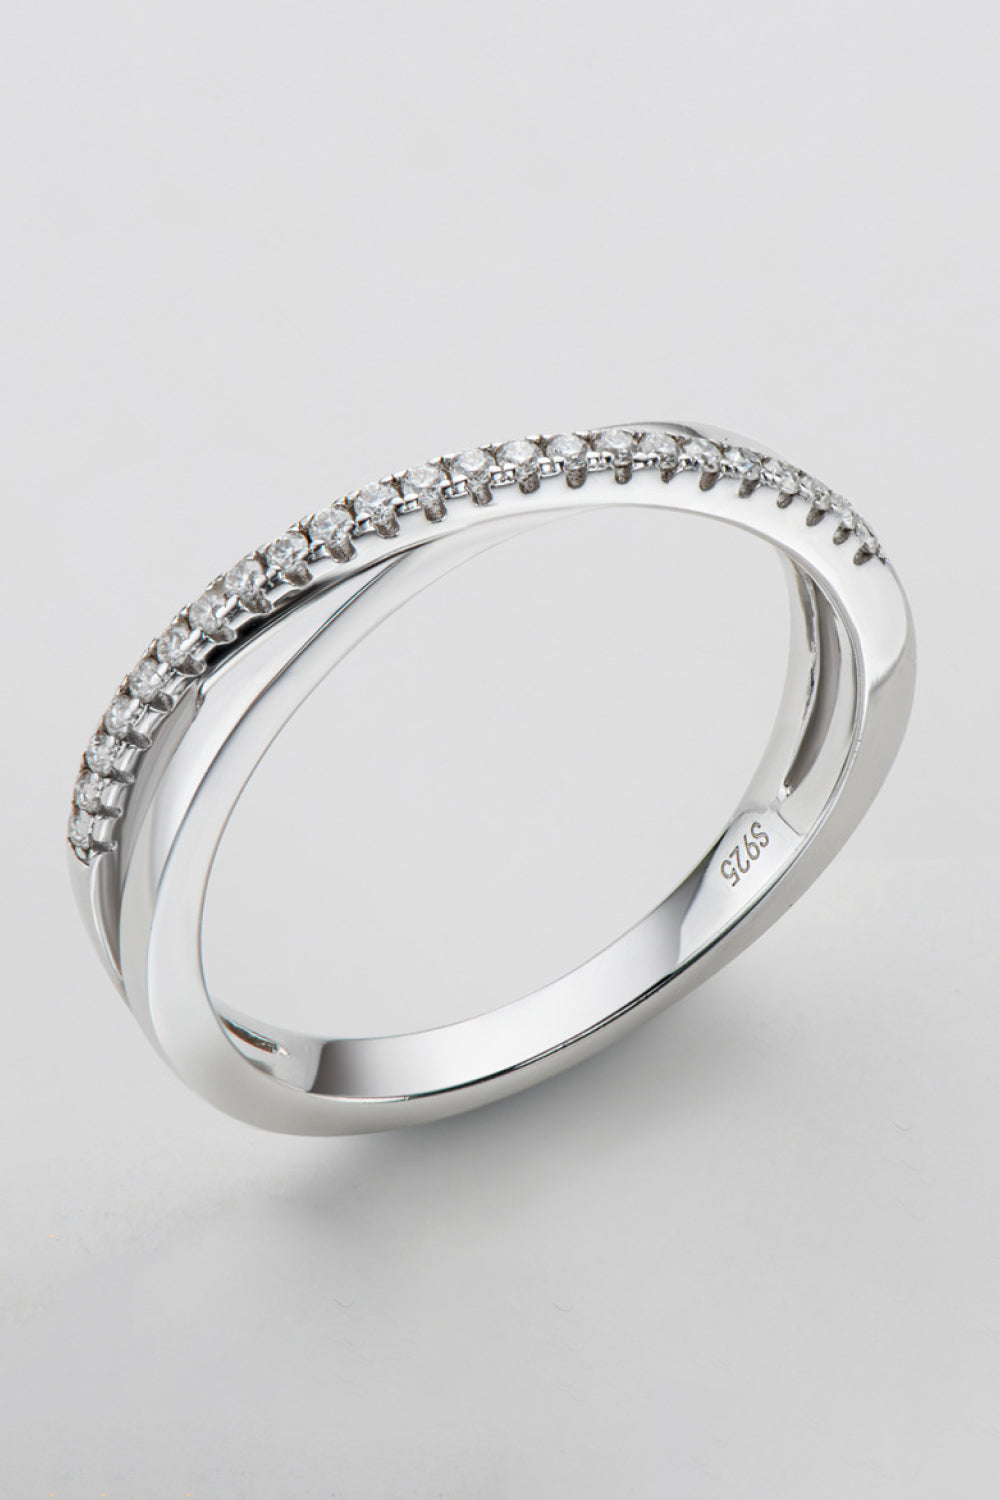 Moissanite Ring - 925 Sterling Silver - Crisscross Style